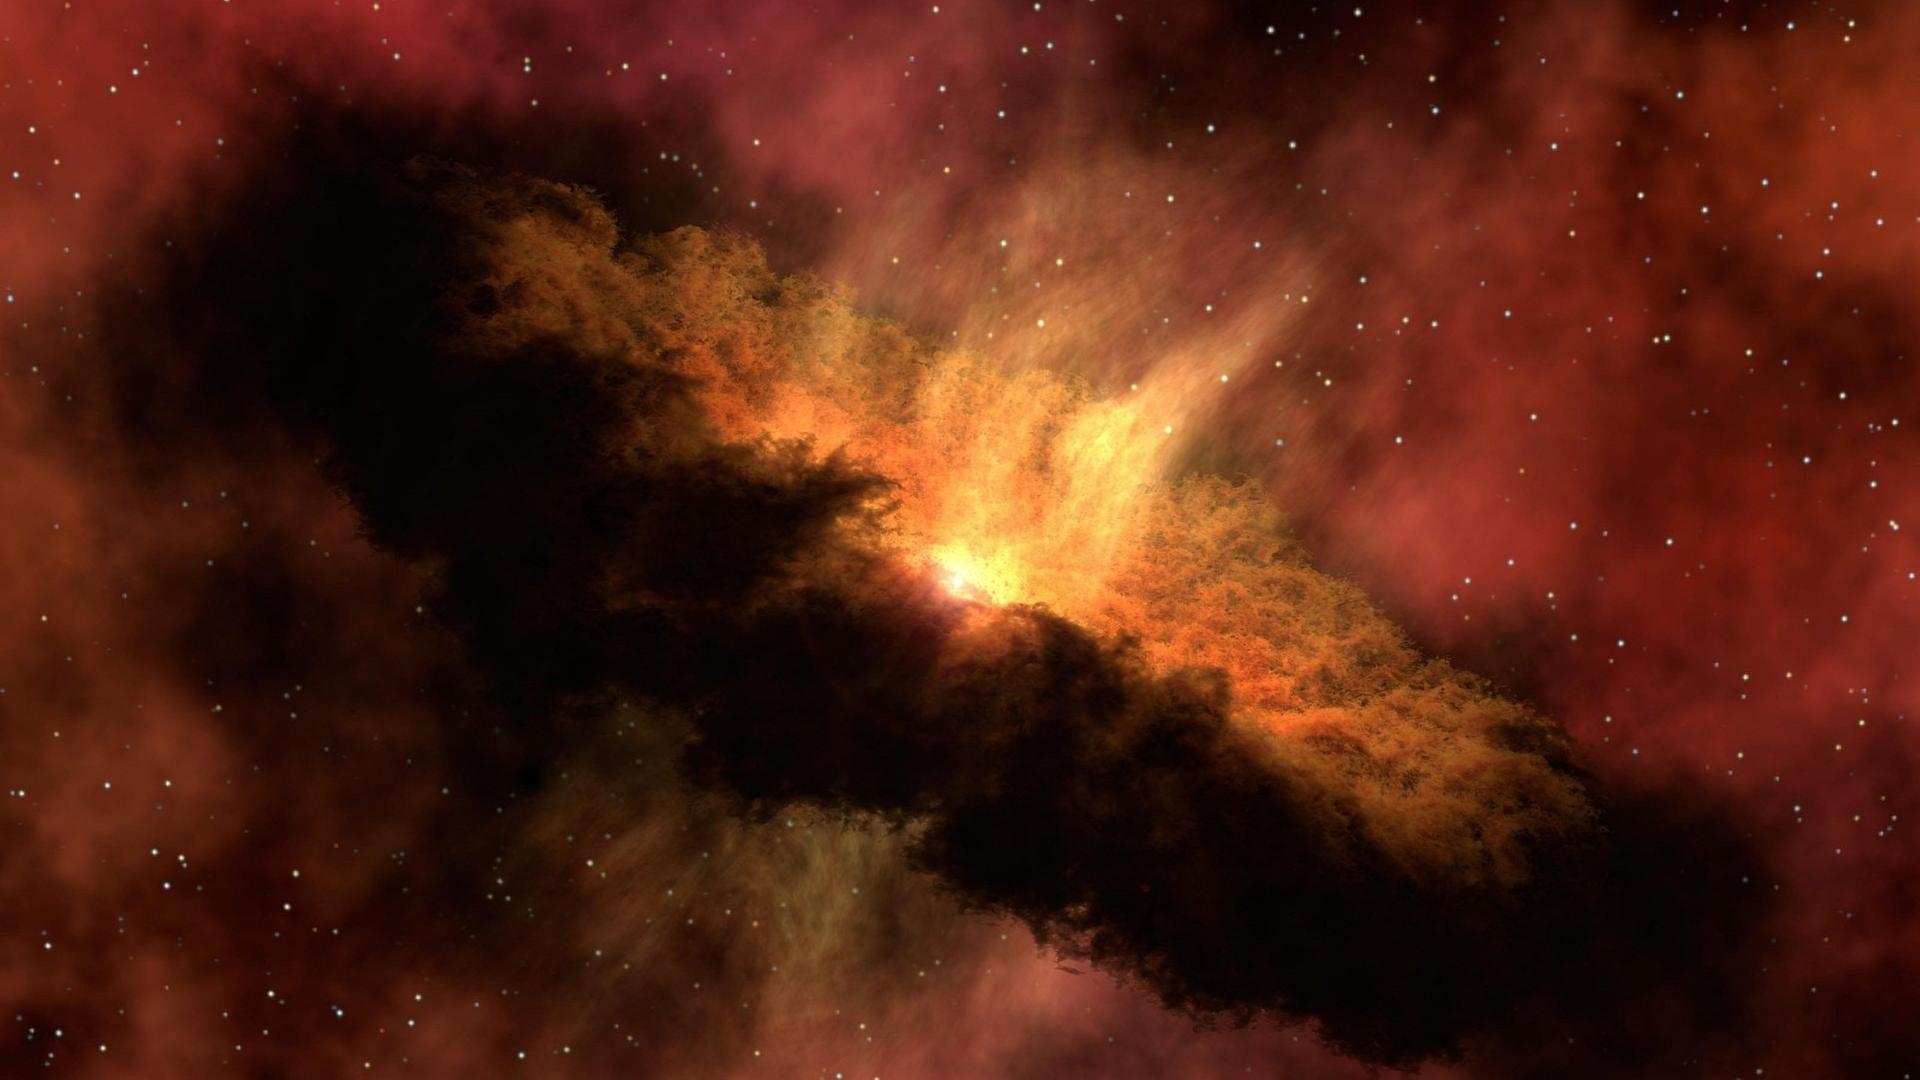 Eine ringförmige Wolke aus Staub, in deren Mitte ein Stern leuchtet – im Hintergrund andere Sterne